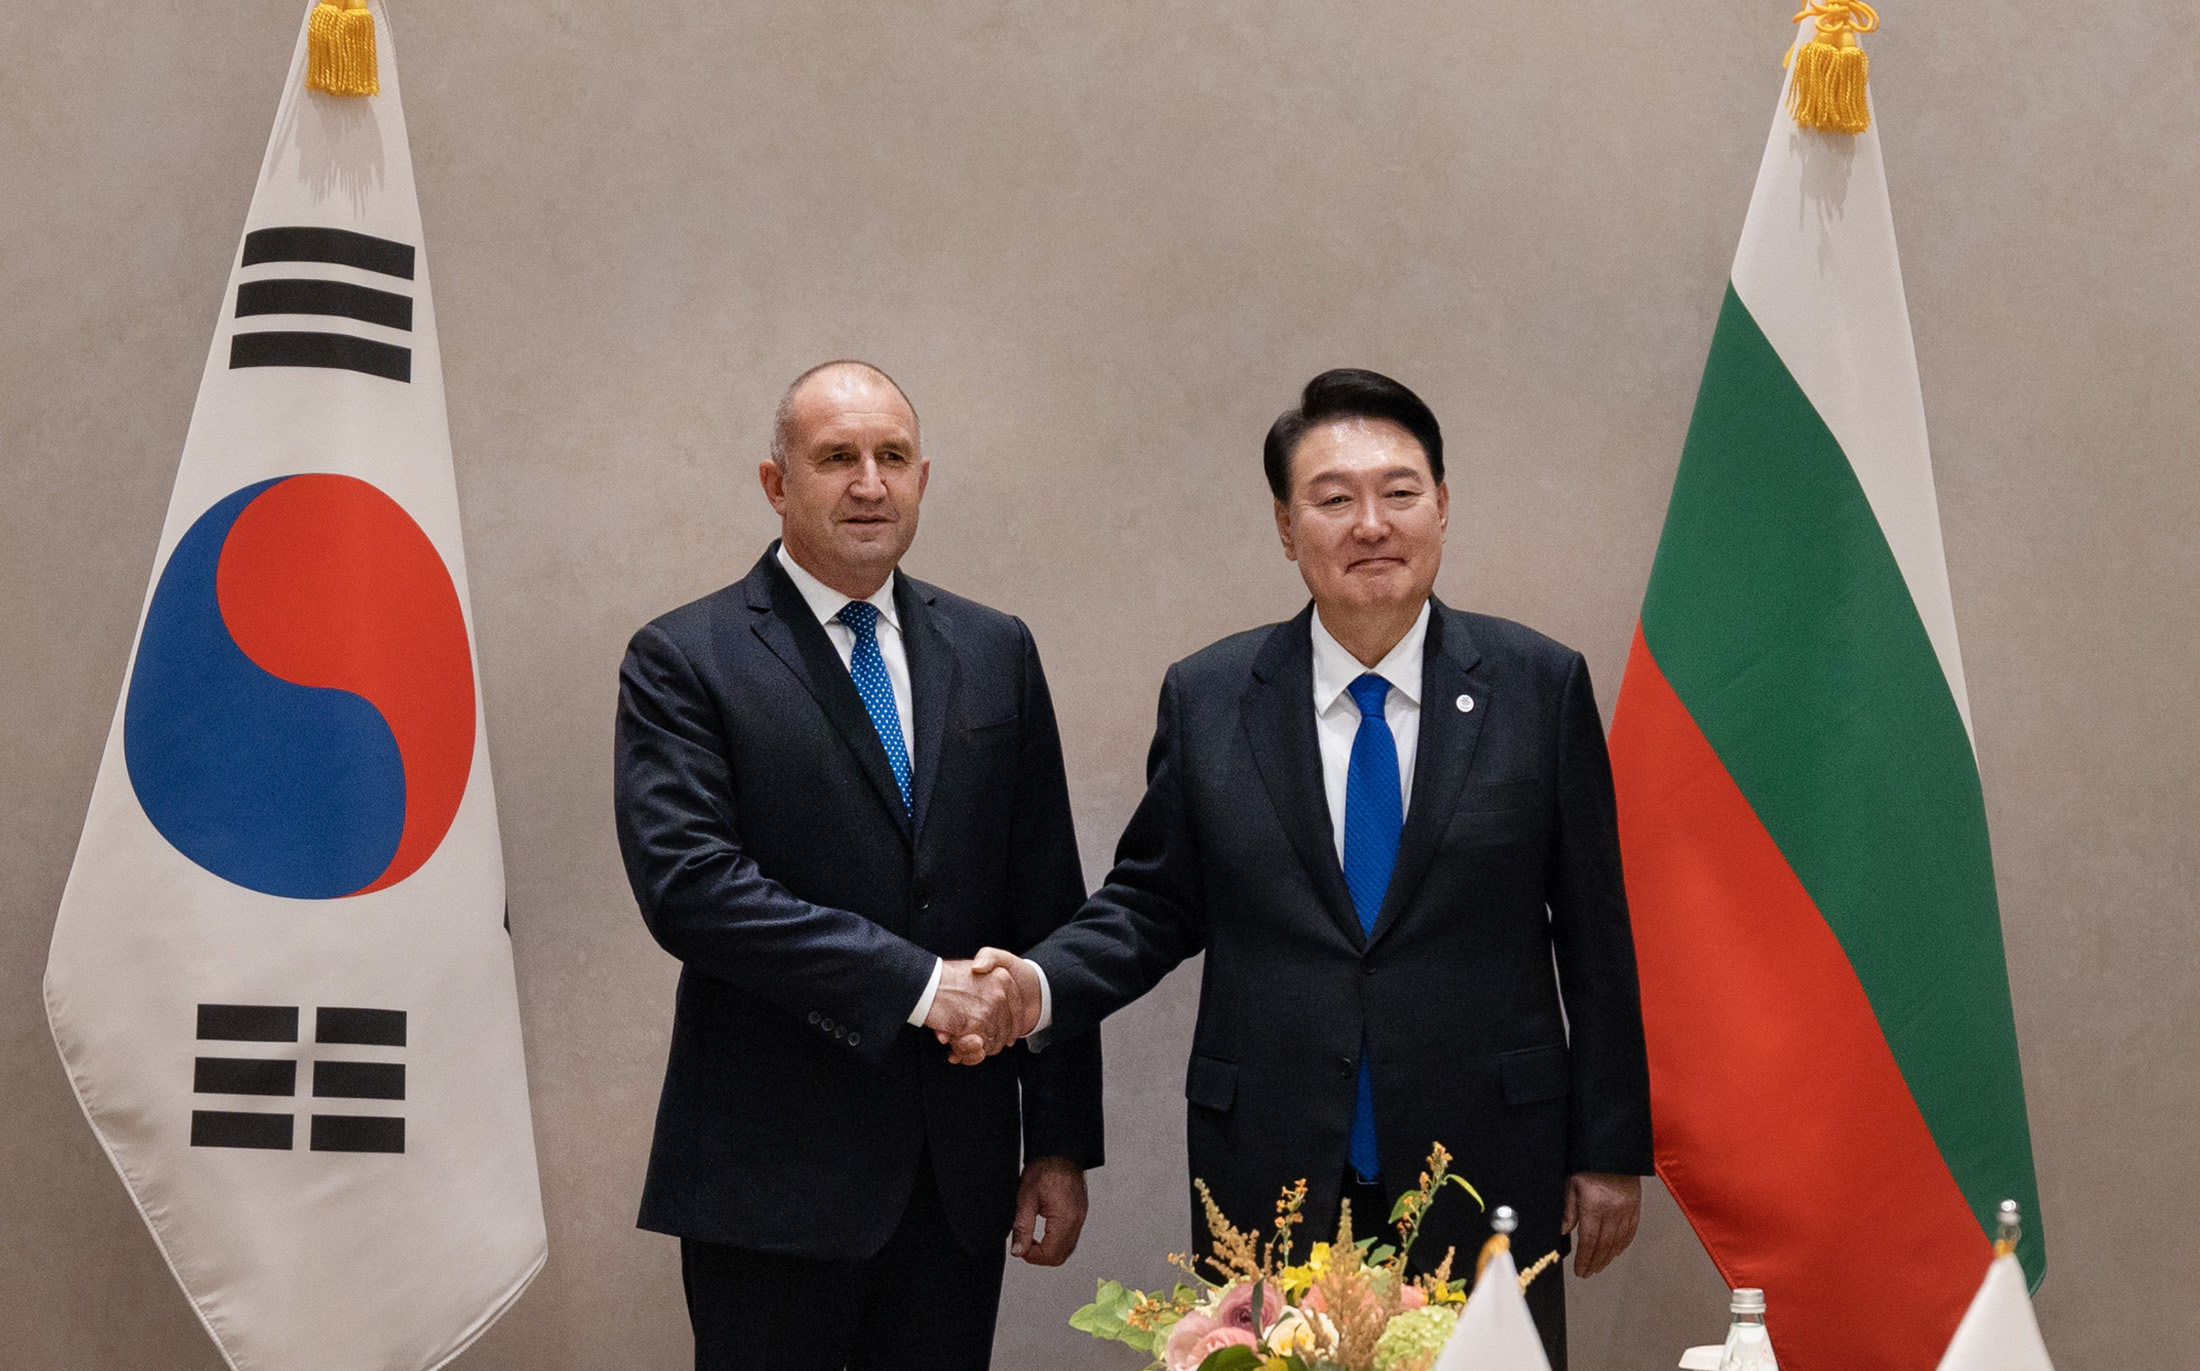 България и Република Корея имат отлични двустранни отношения, бързо развиващо